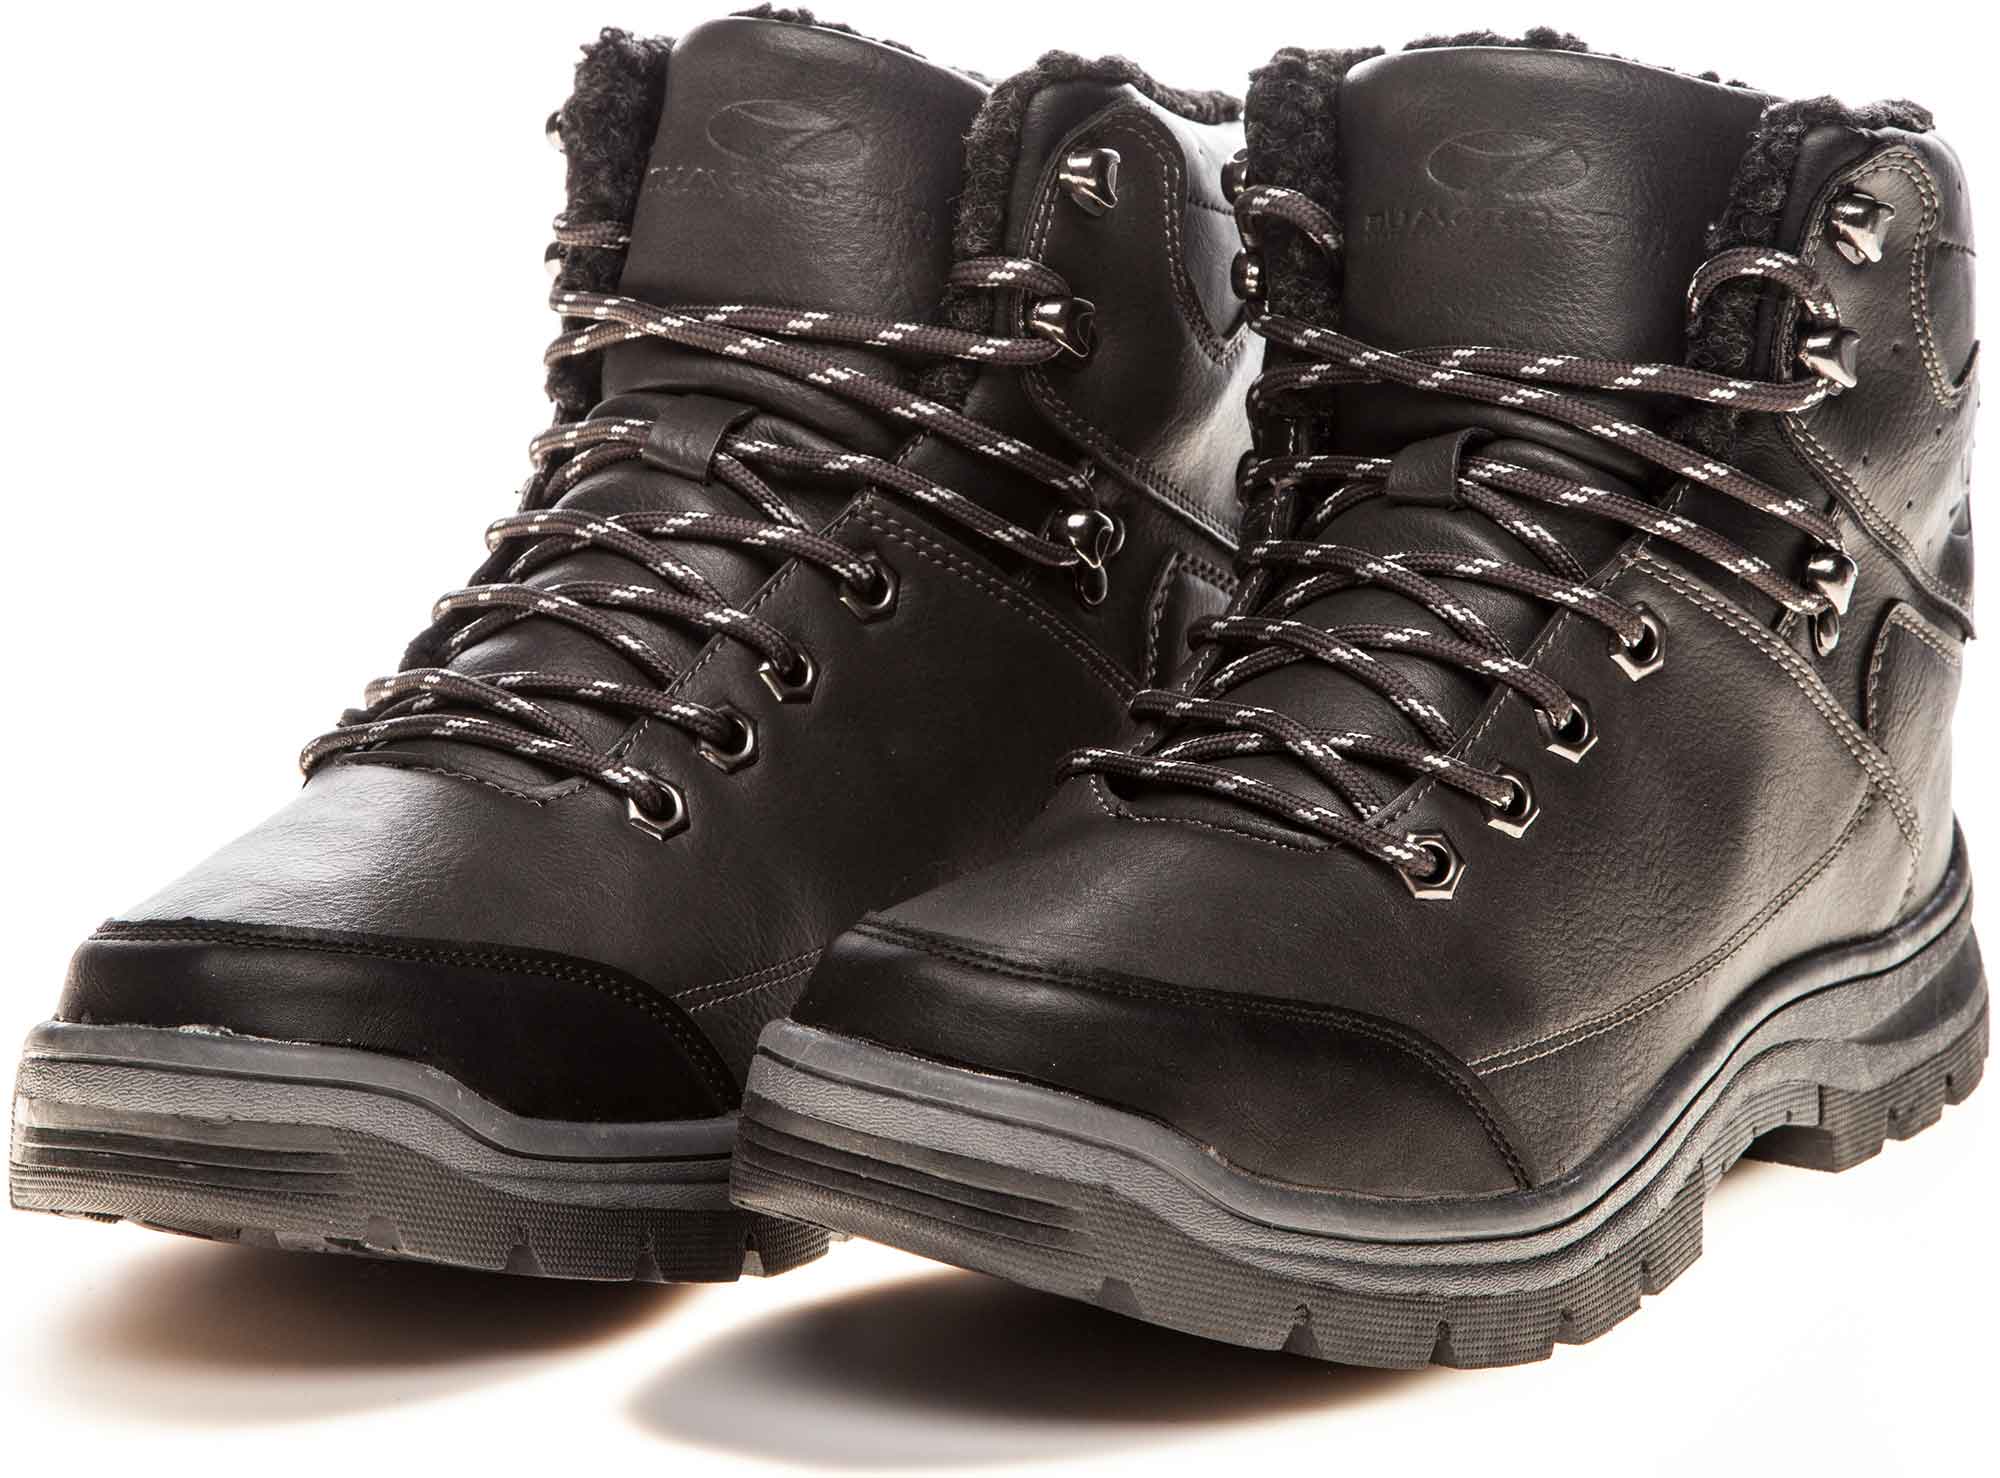 Men's Winter Boots